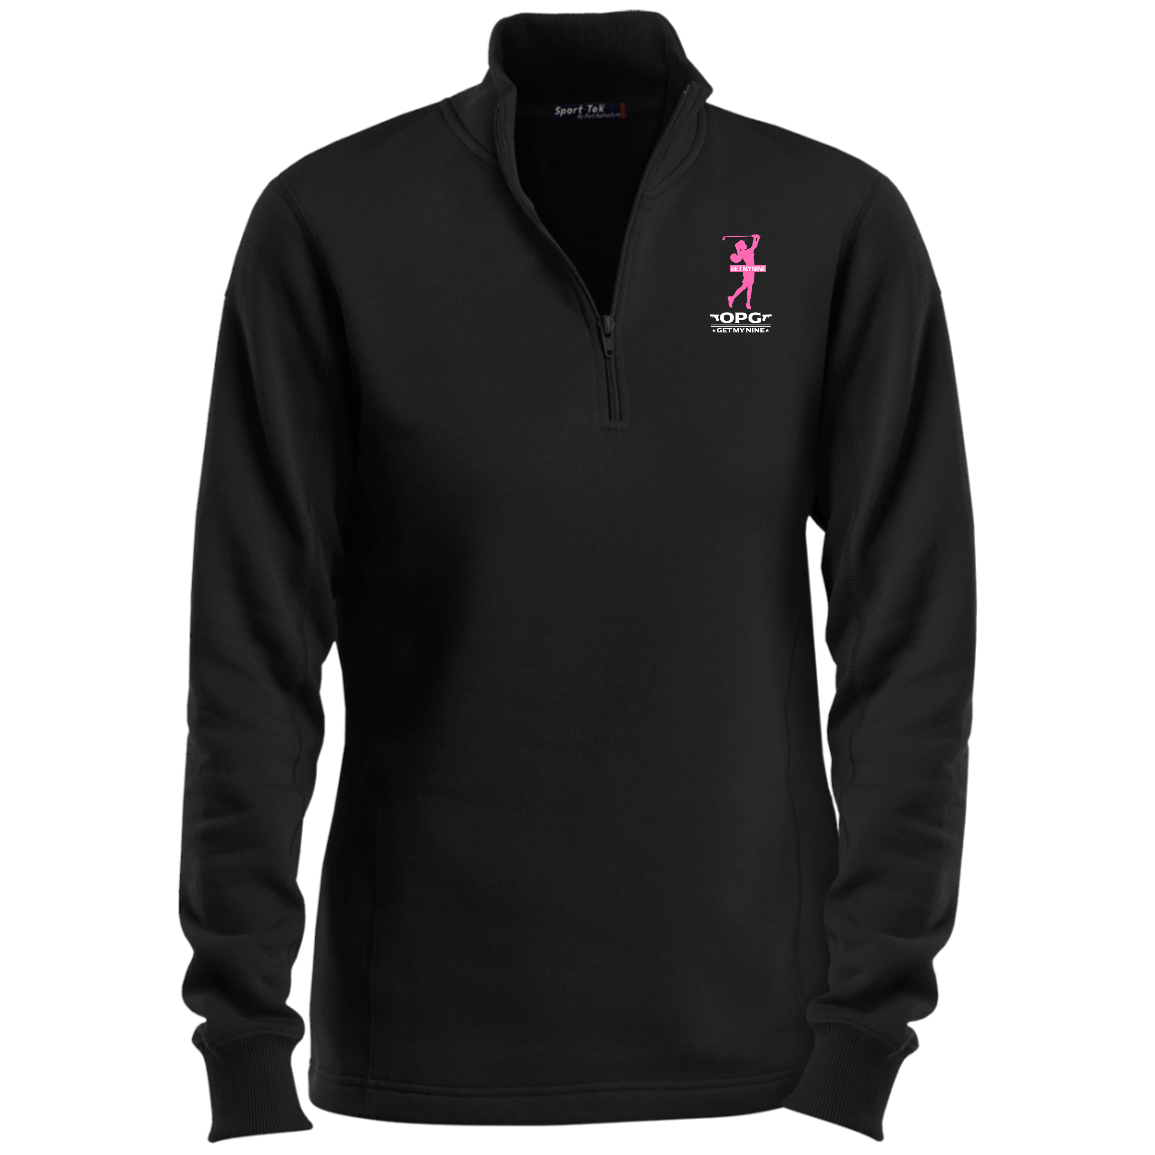 OPG Custom Design #16. Get My Nine. Female Version. Ladies 1/4 Zip Sweatshirt